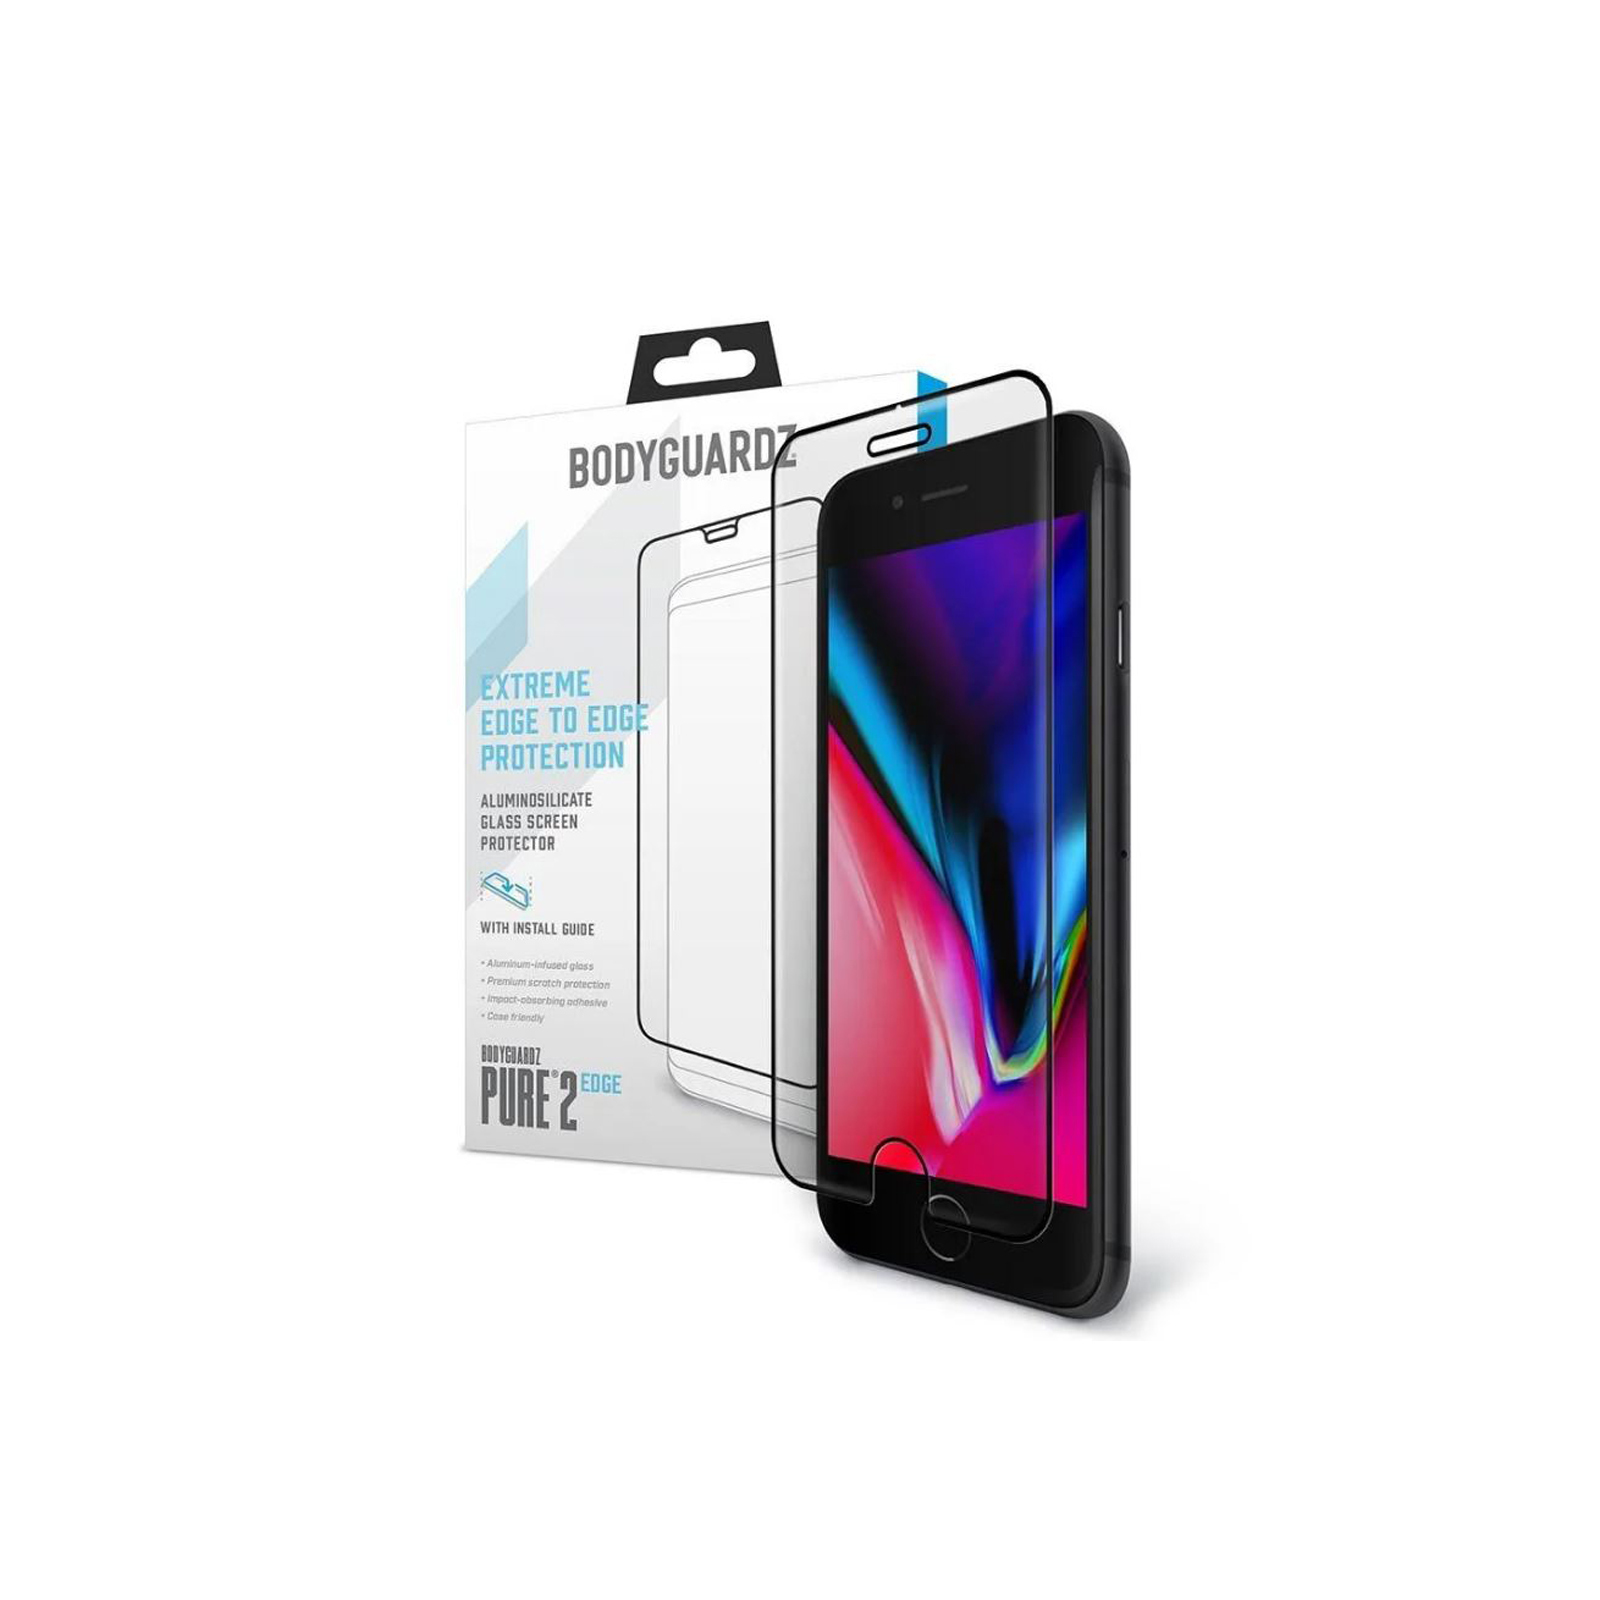 BodyGuardz Sceenpure Glass iPhone 6/6s Screen Protector Brand New